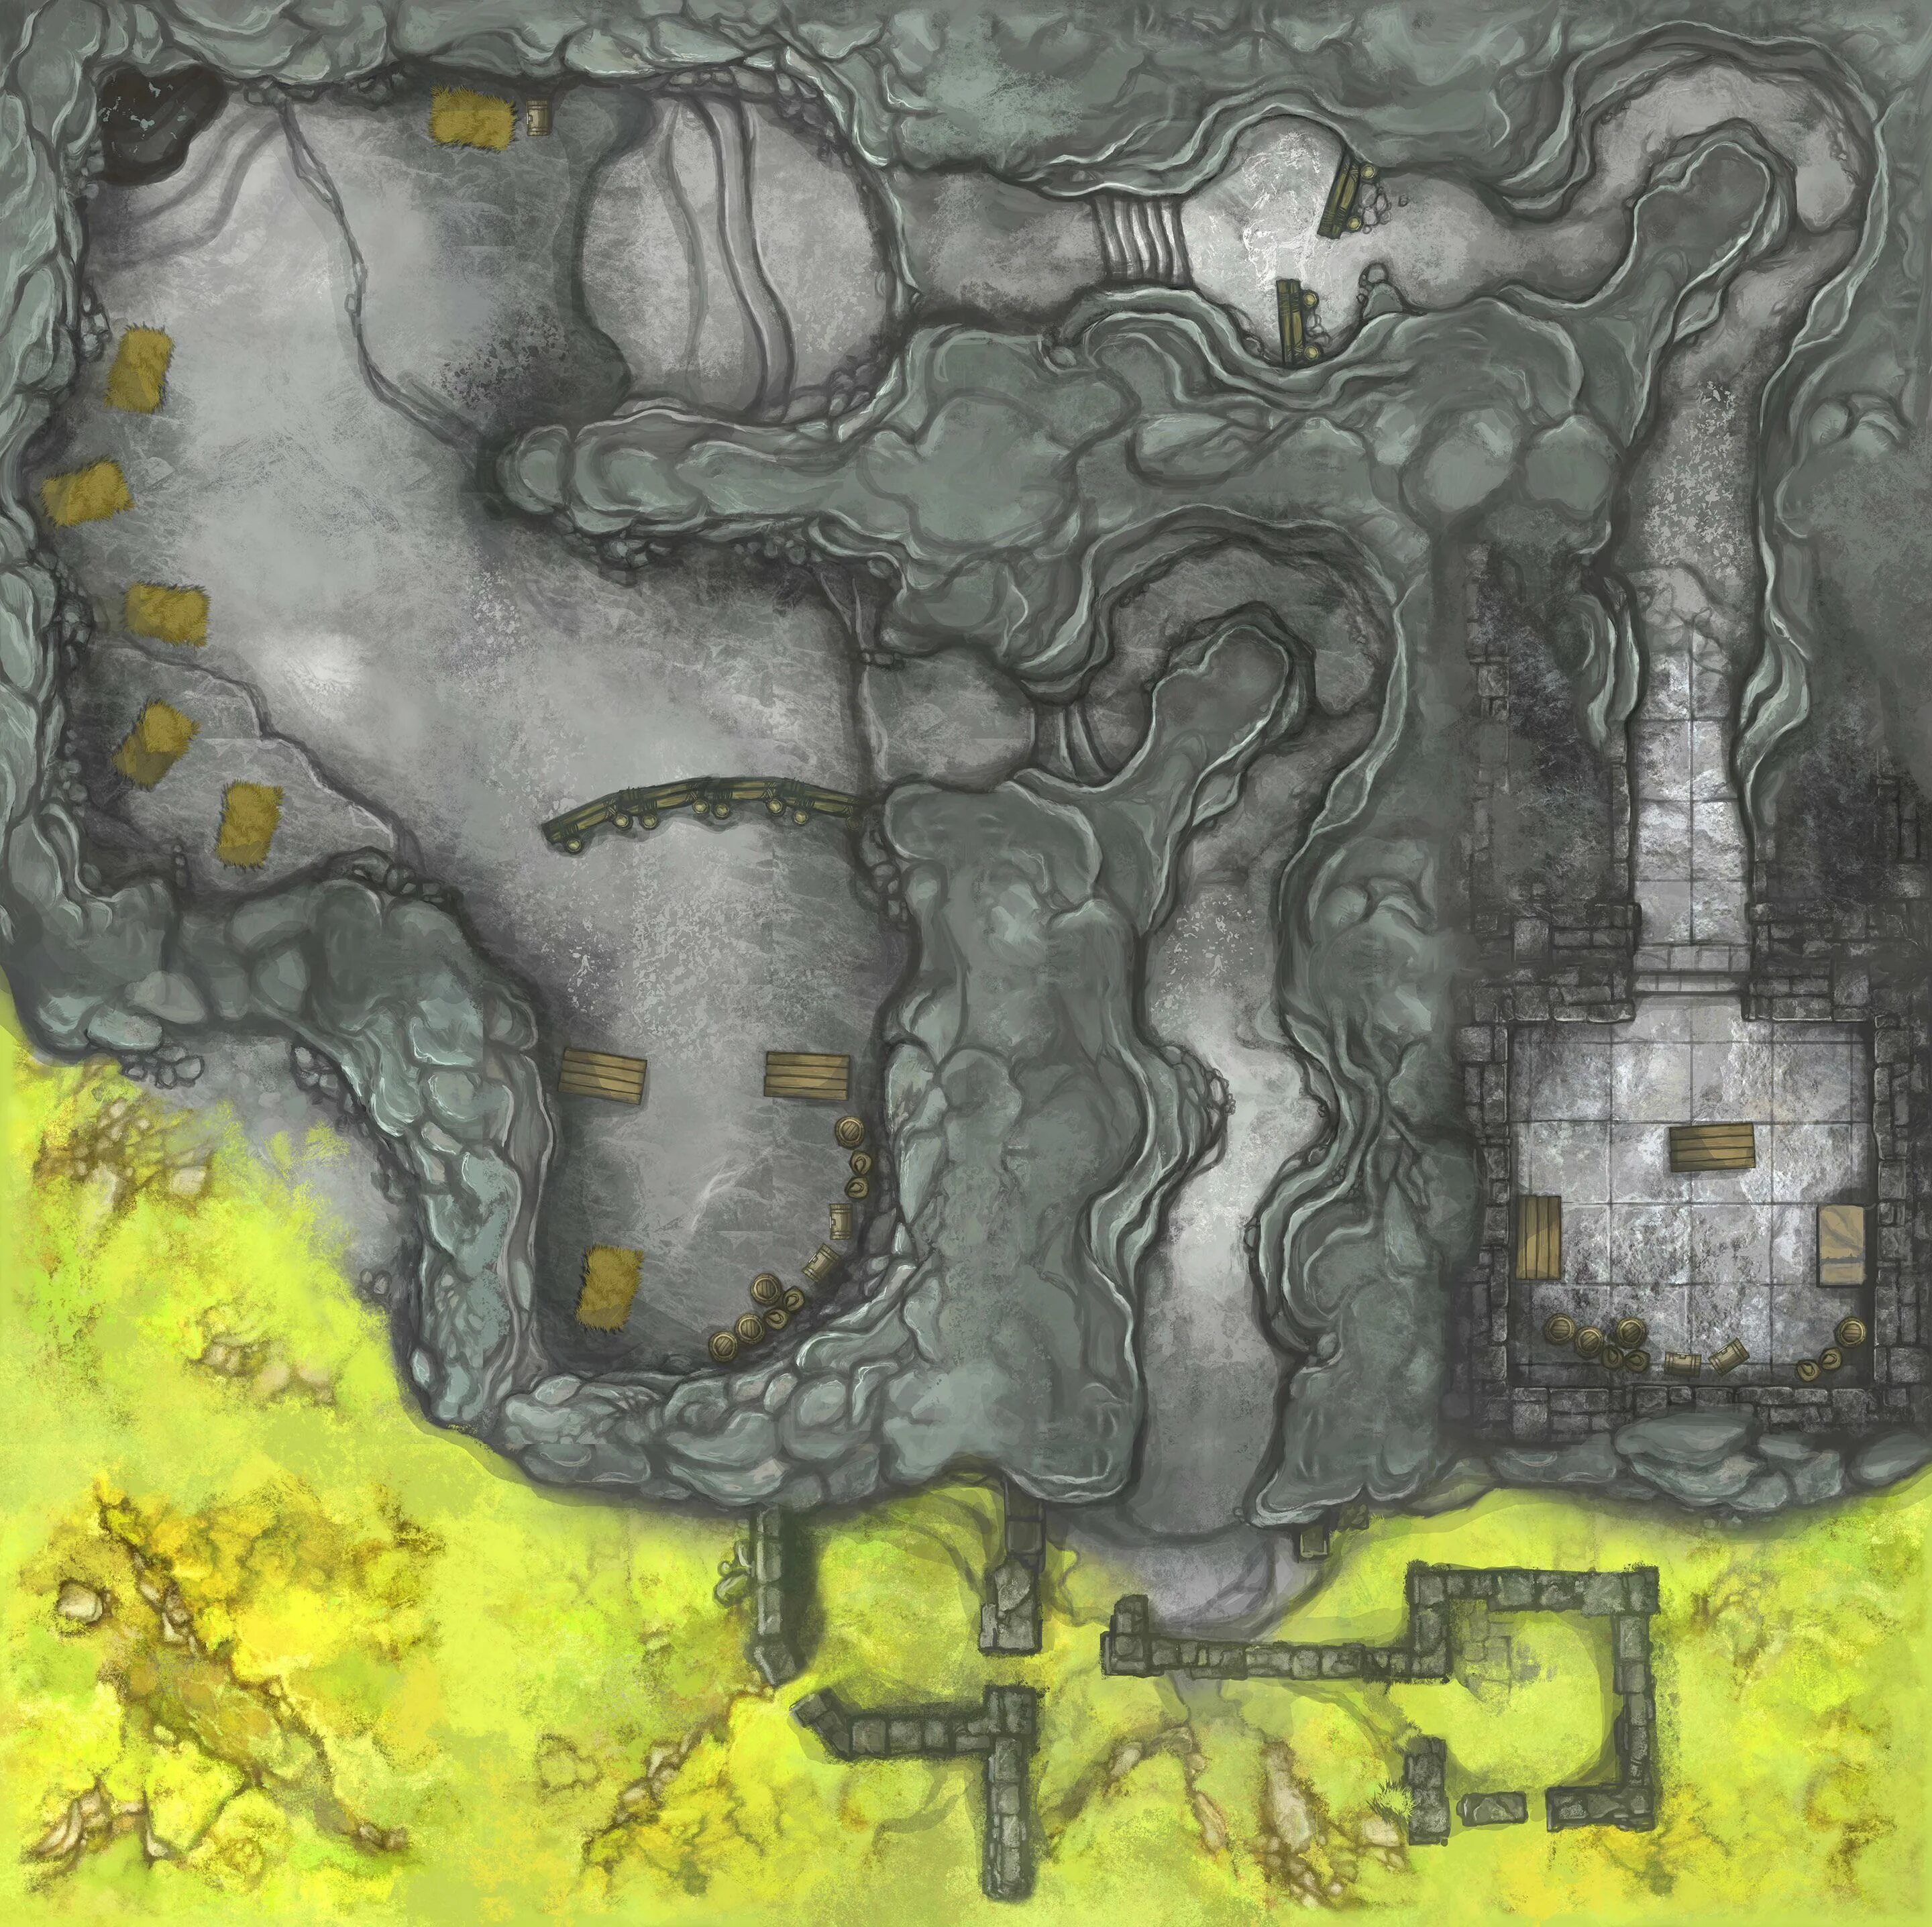 Cave map. Пещера DND Battlemap. DND 5e Cave Map. Пещера Battle Map. D D Battle Map пещера.